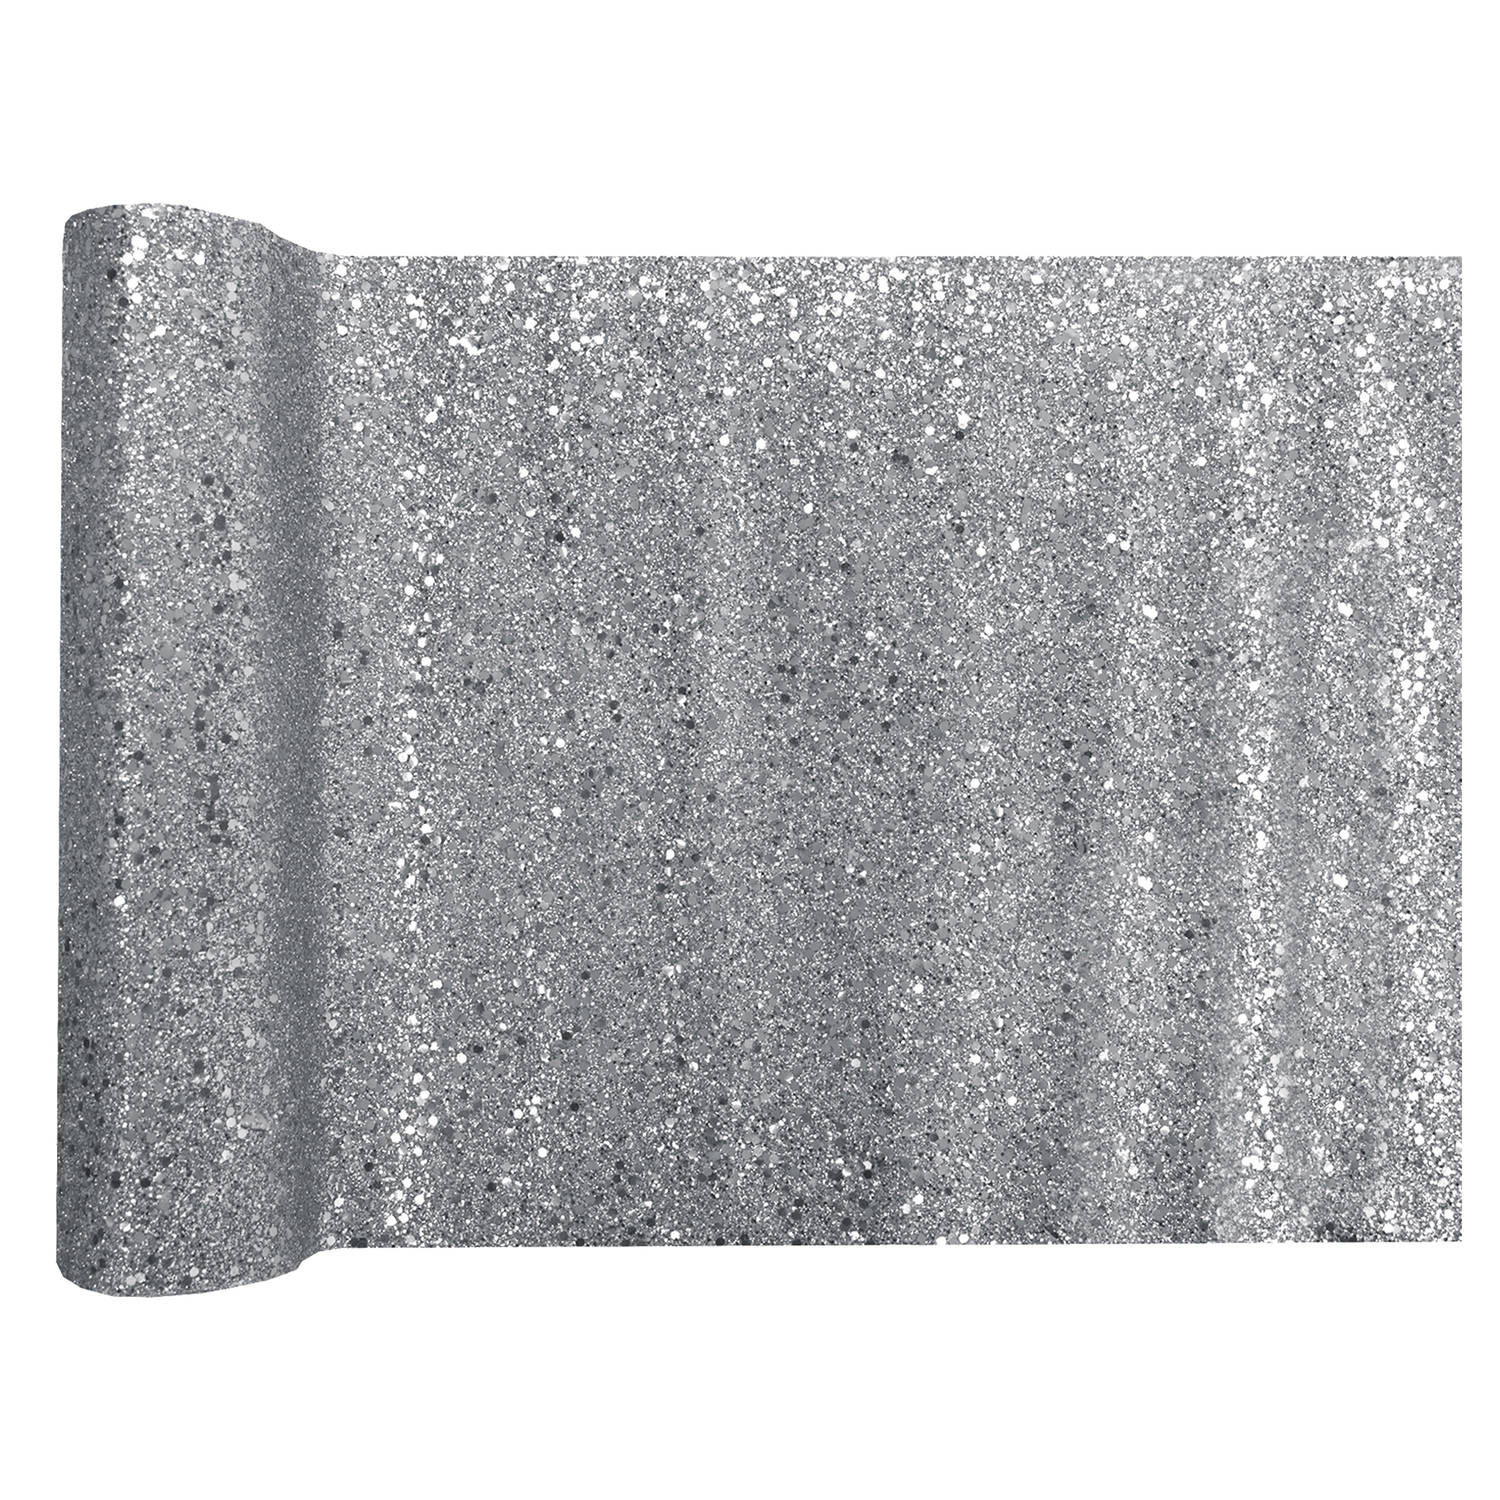 Santex Glitter Tafelloper op rol - zilver - 28 x 300 cm - polyester